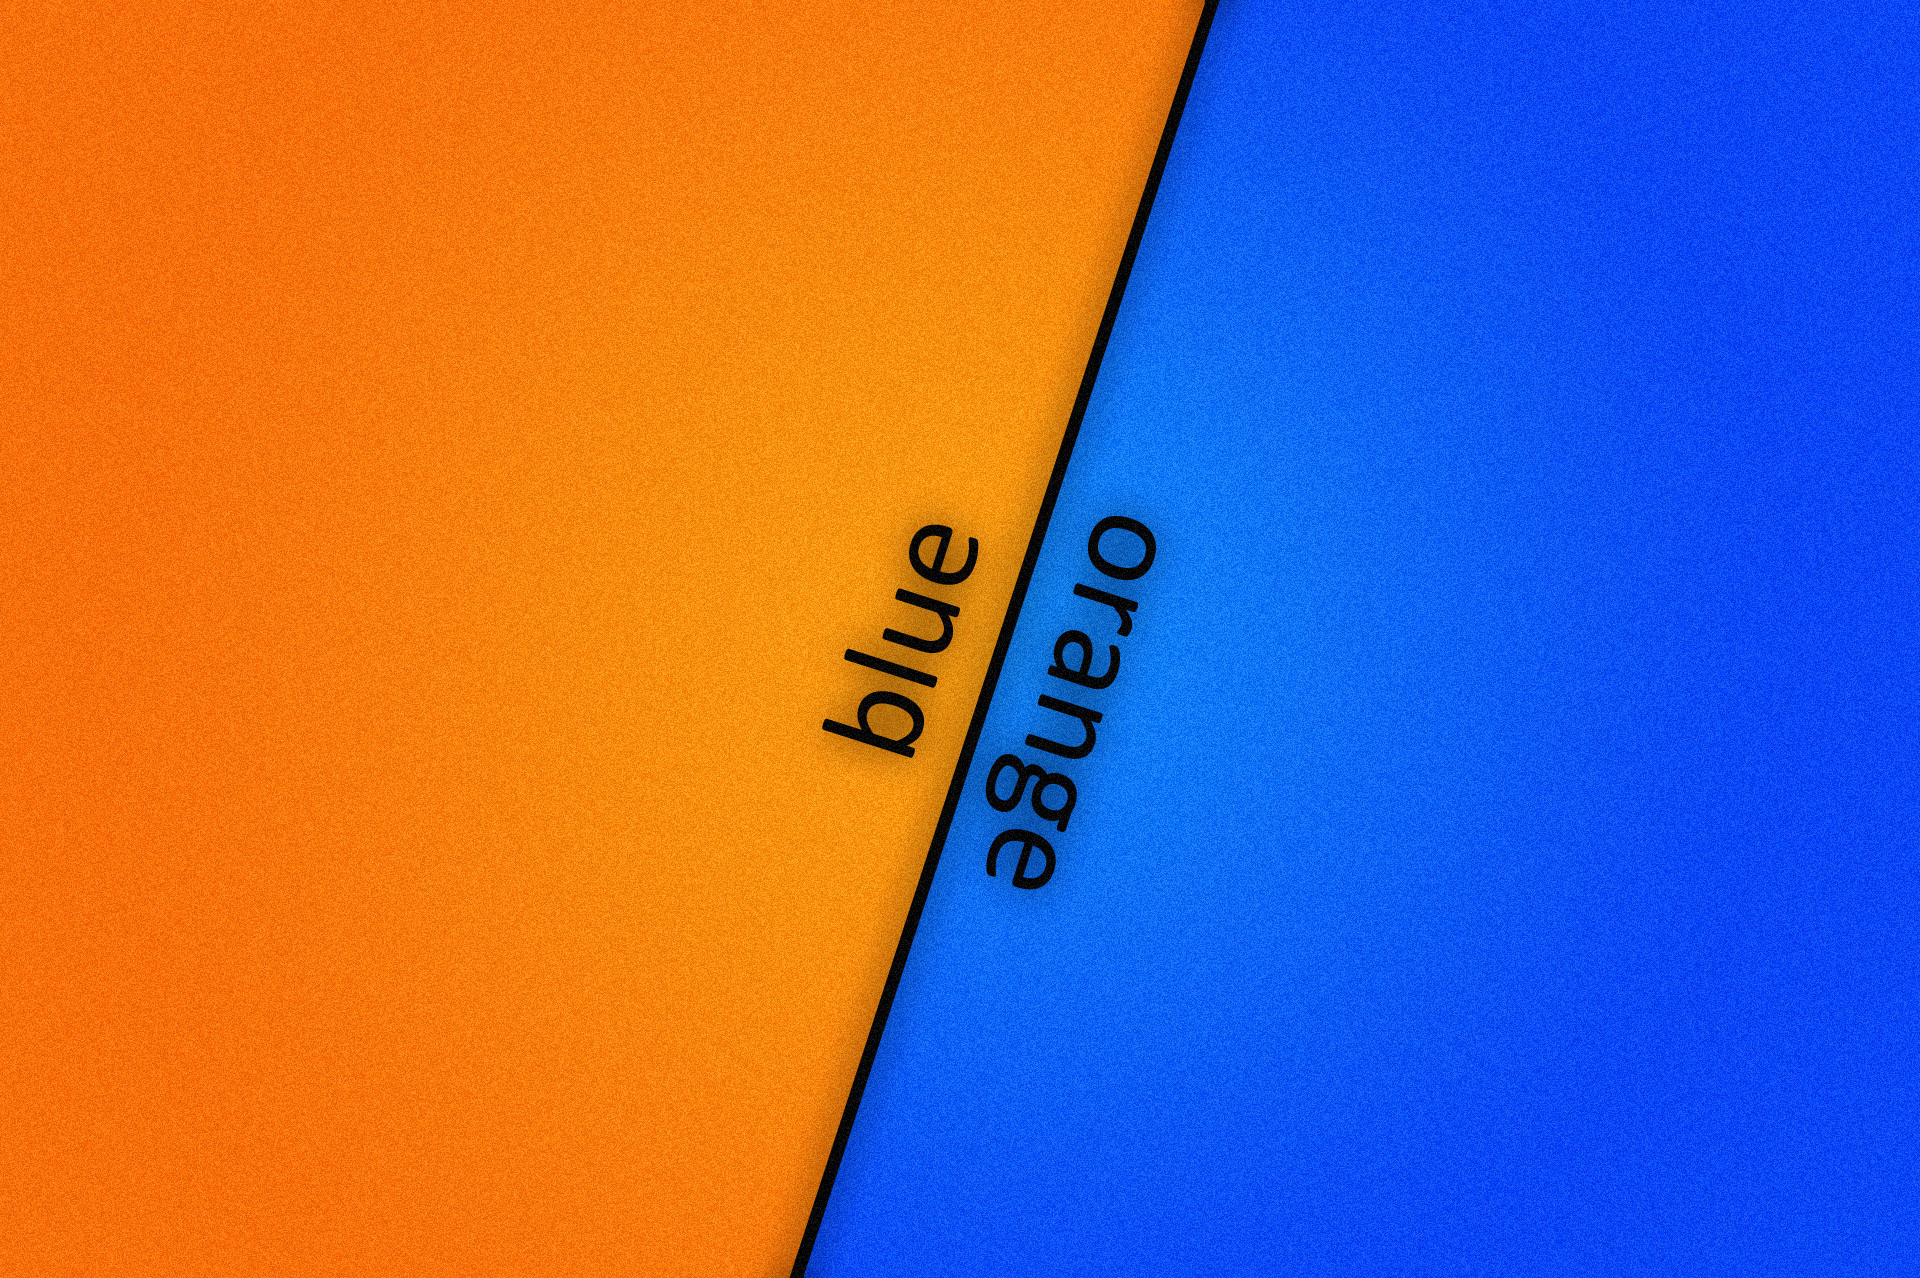 blaue und orange tapete,blau,gelb,orange,text,kobaltblau